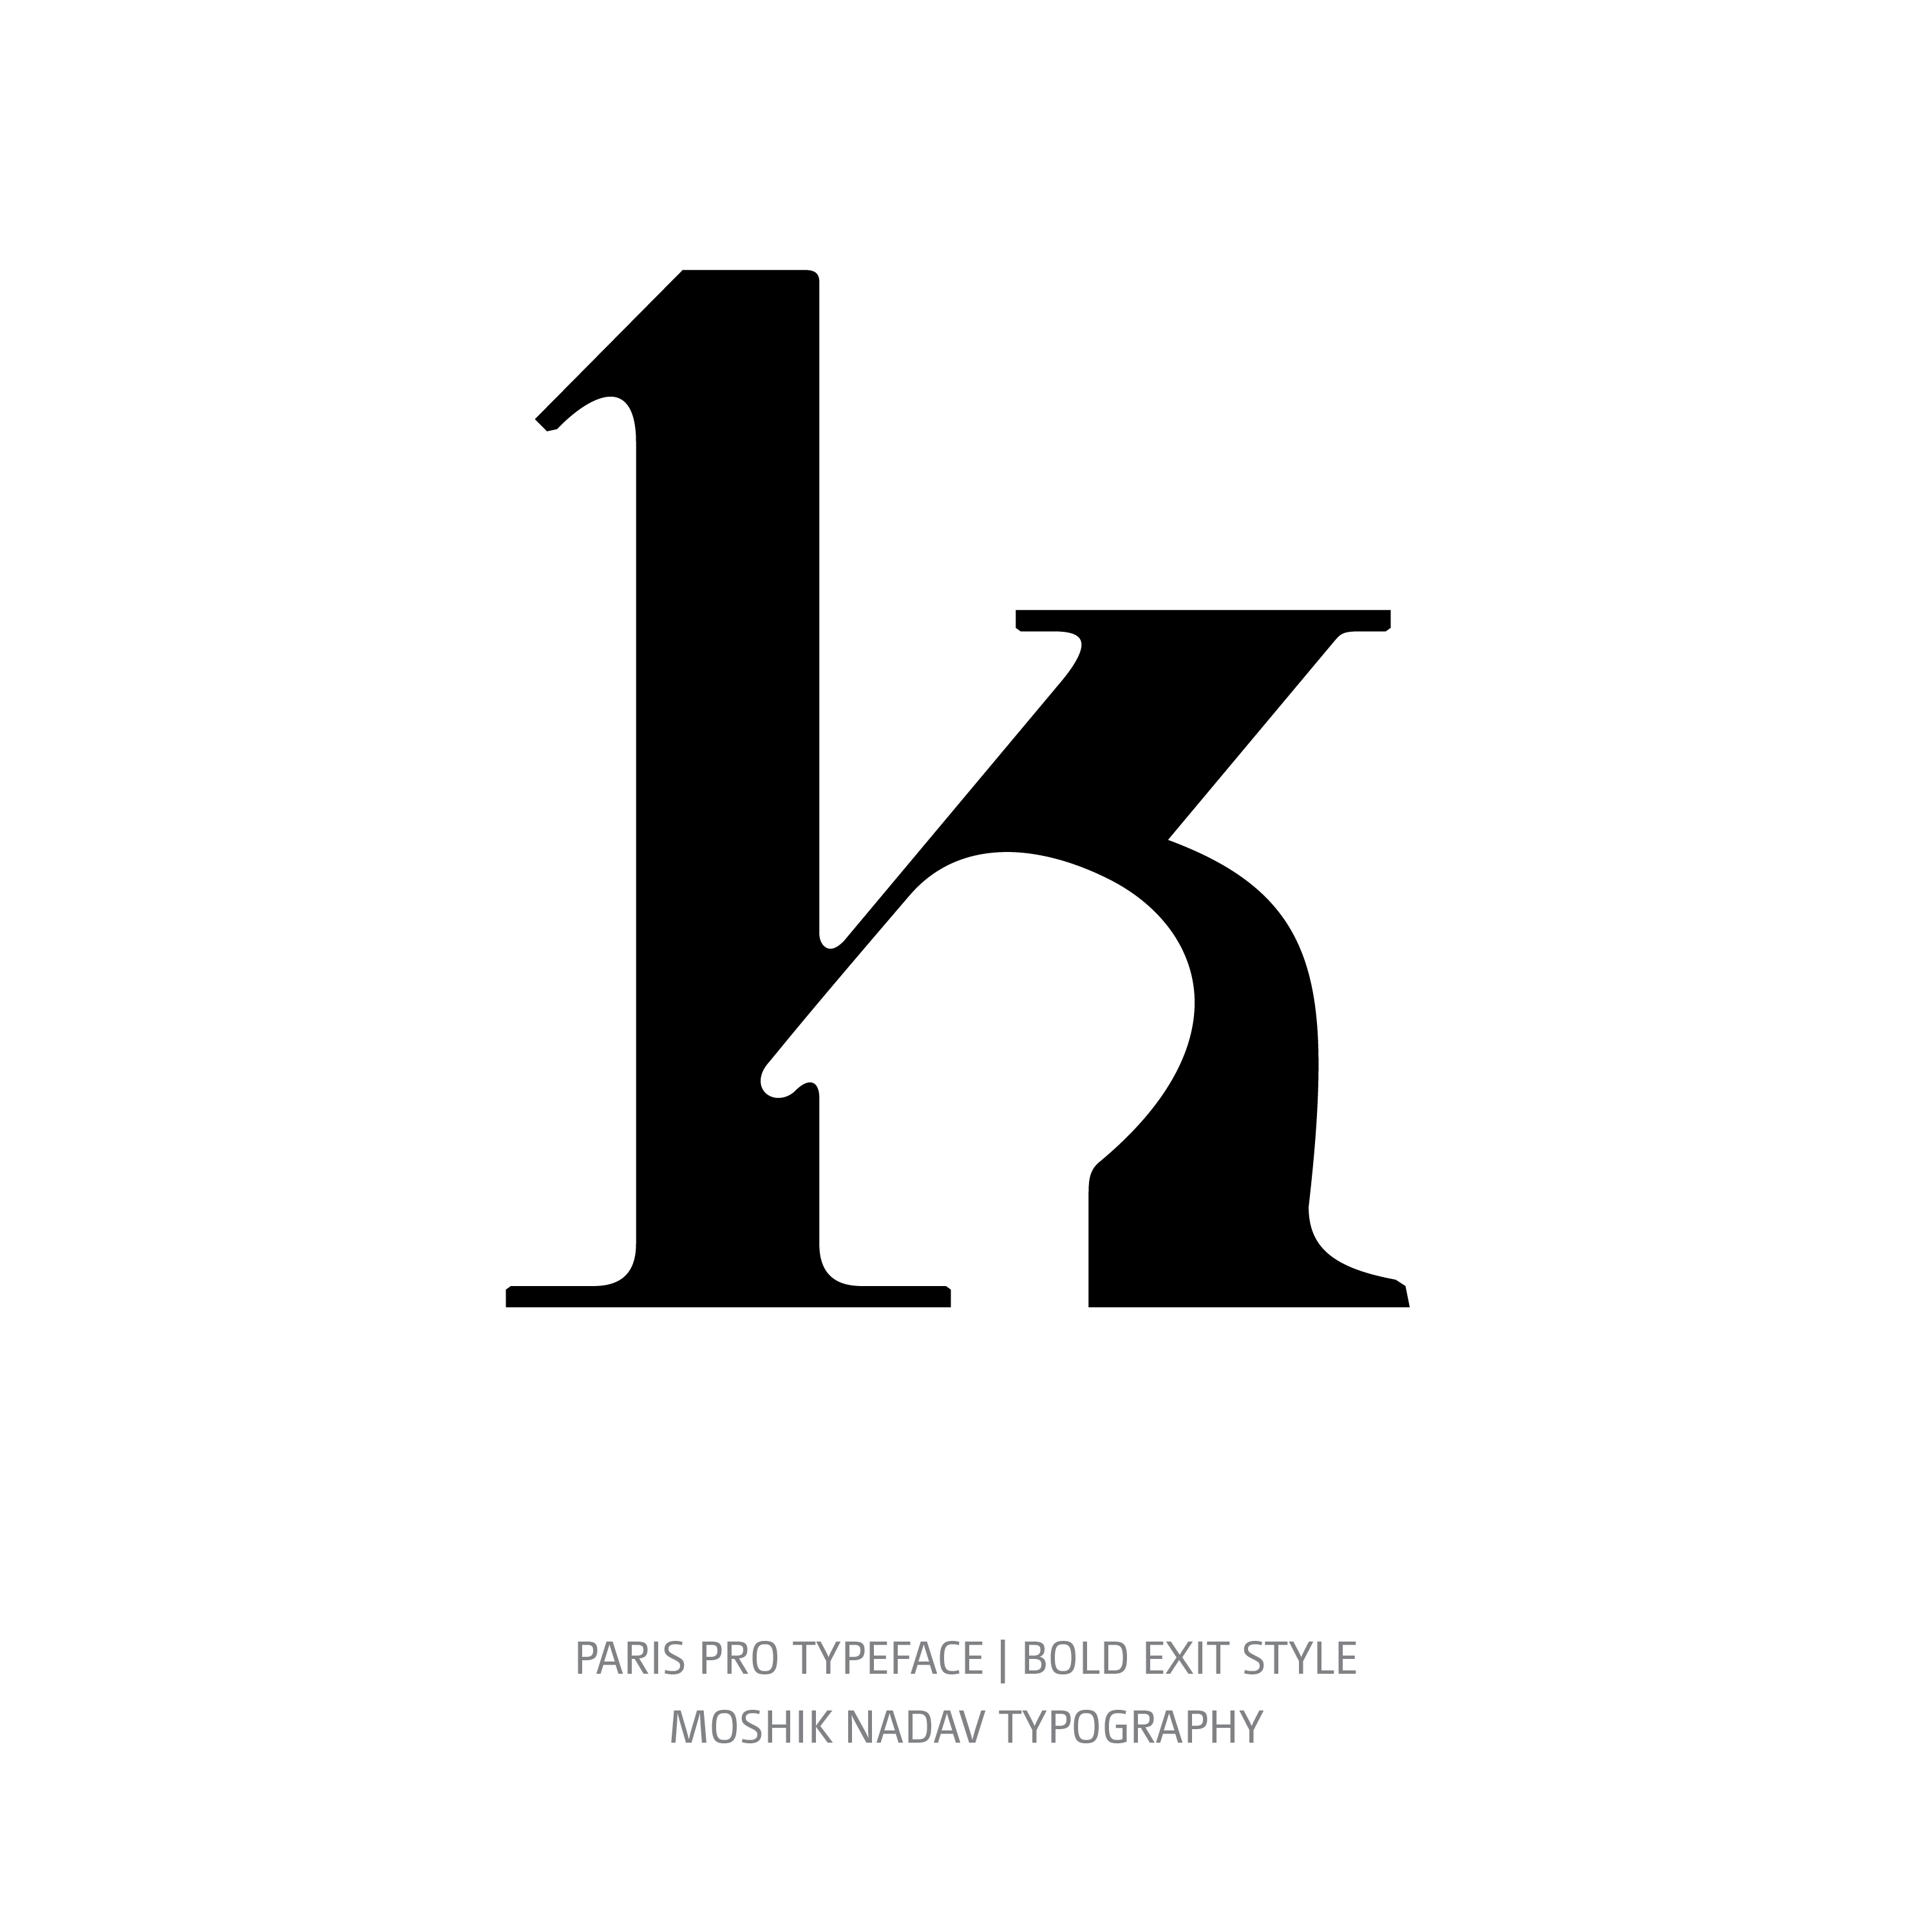 Paris Pro Typeface Bold Exit k